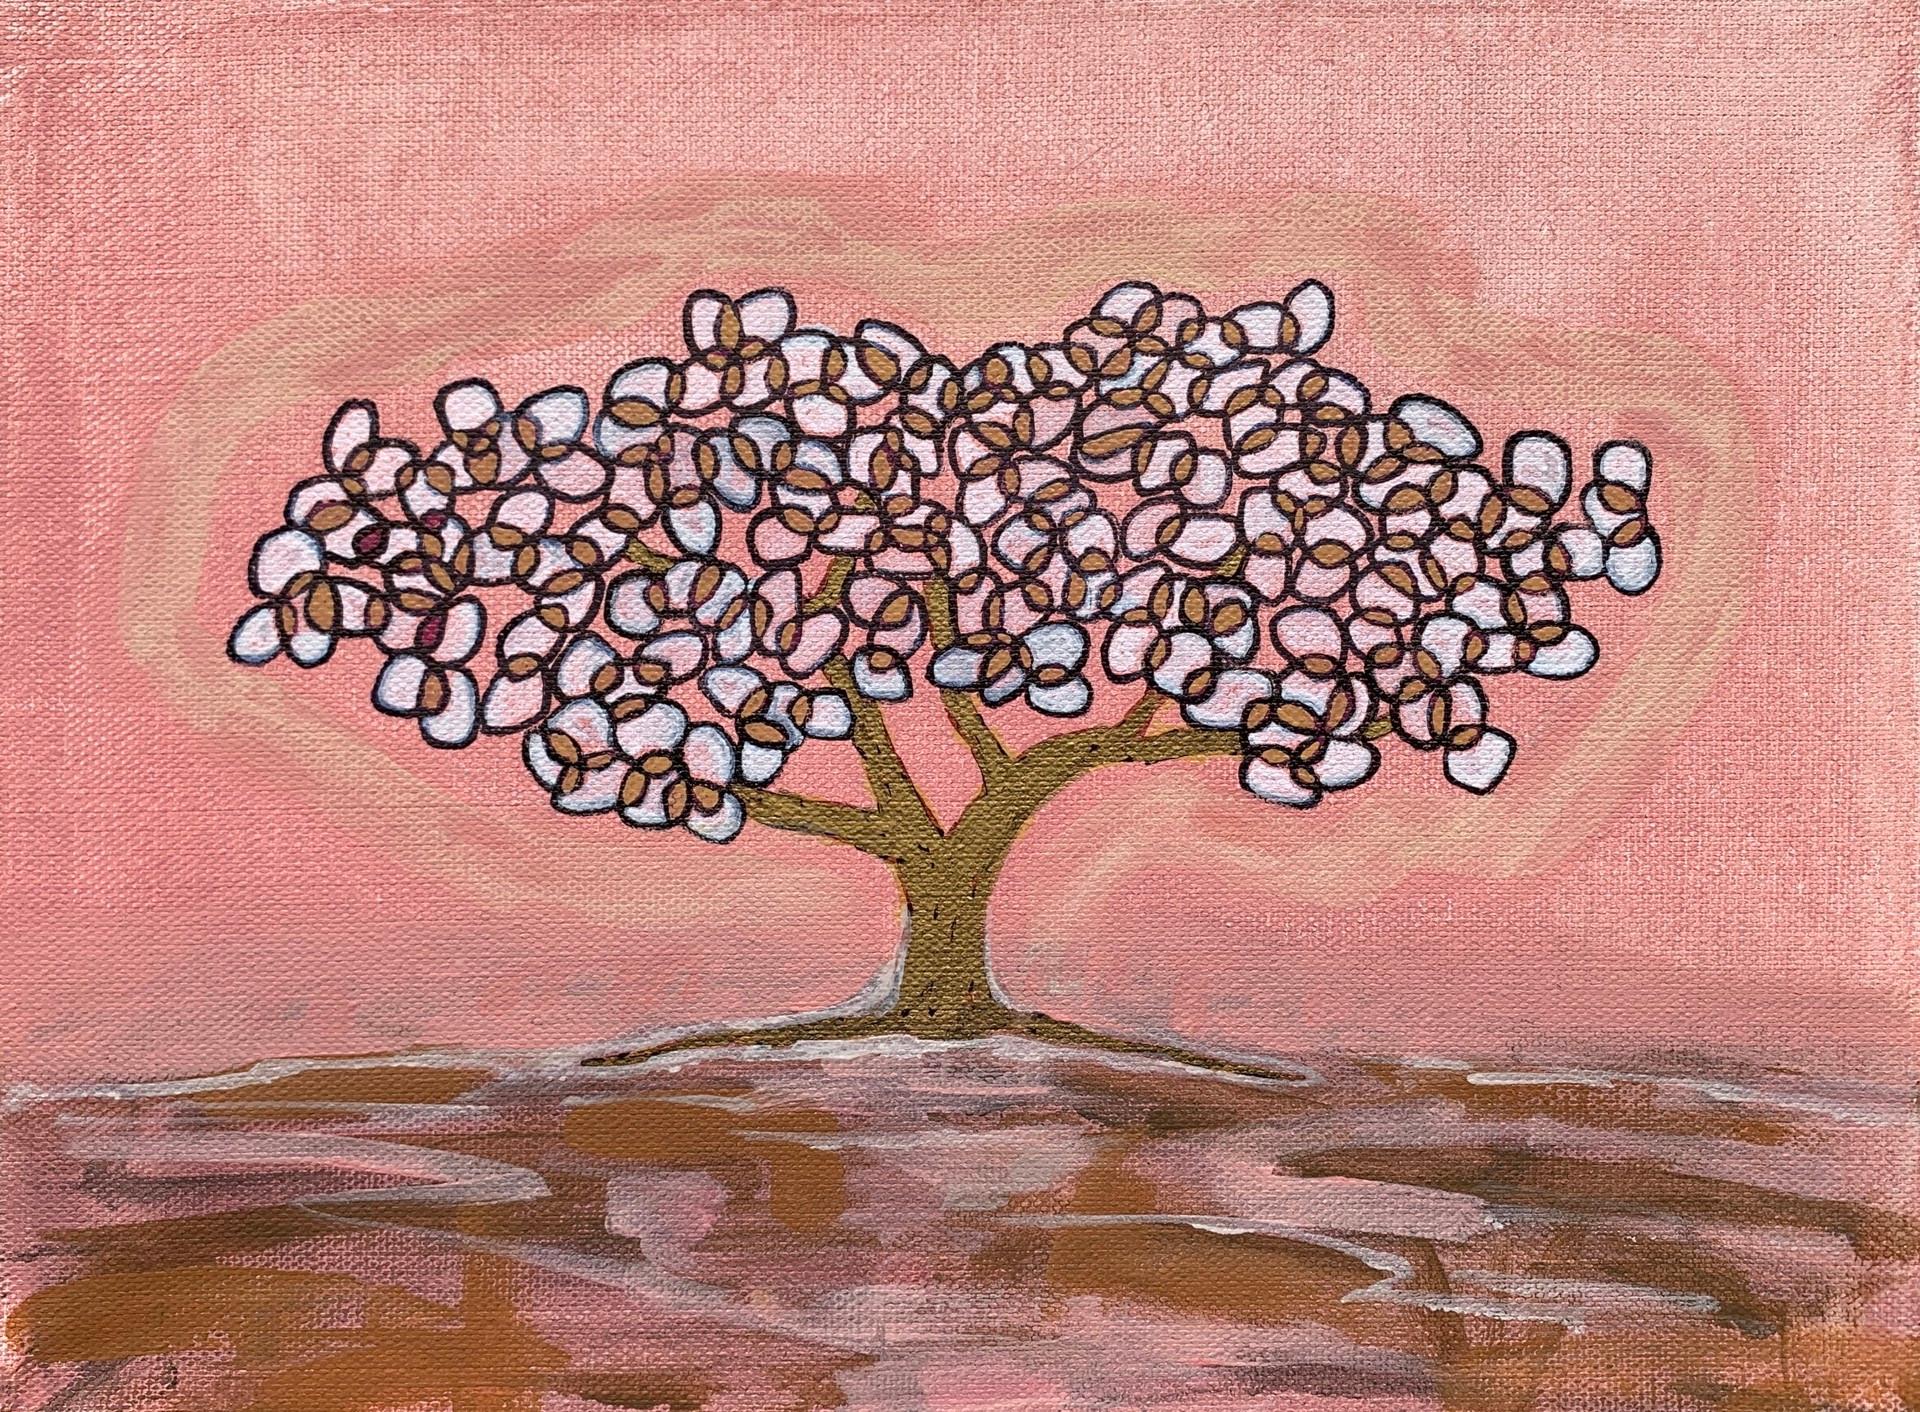 Annie's Tree II - Art by Julia Blake